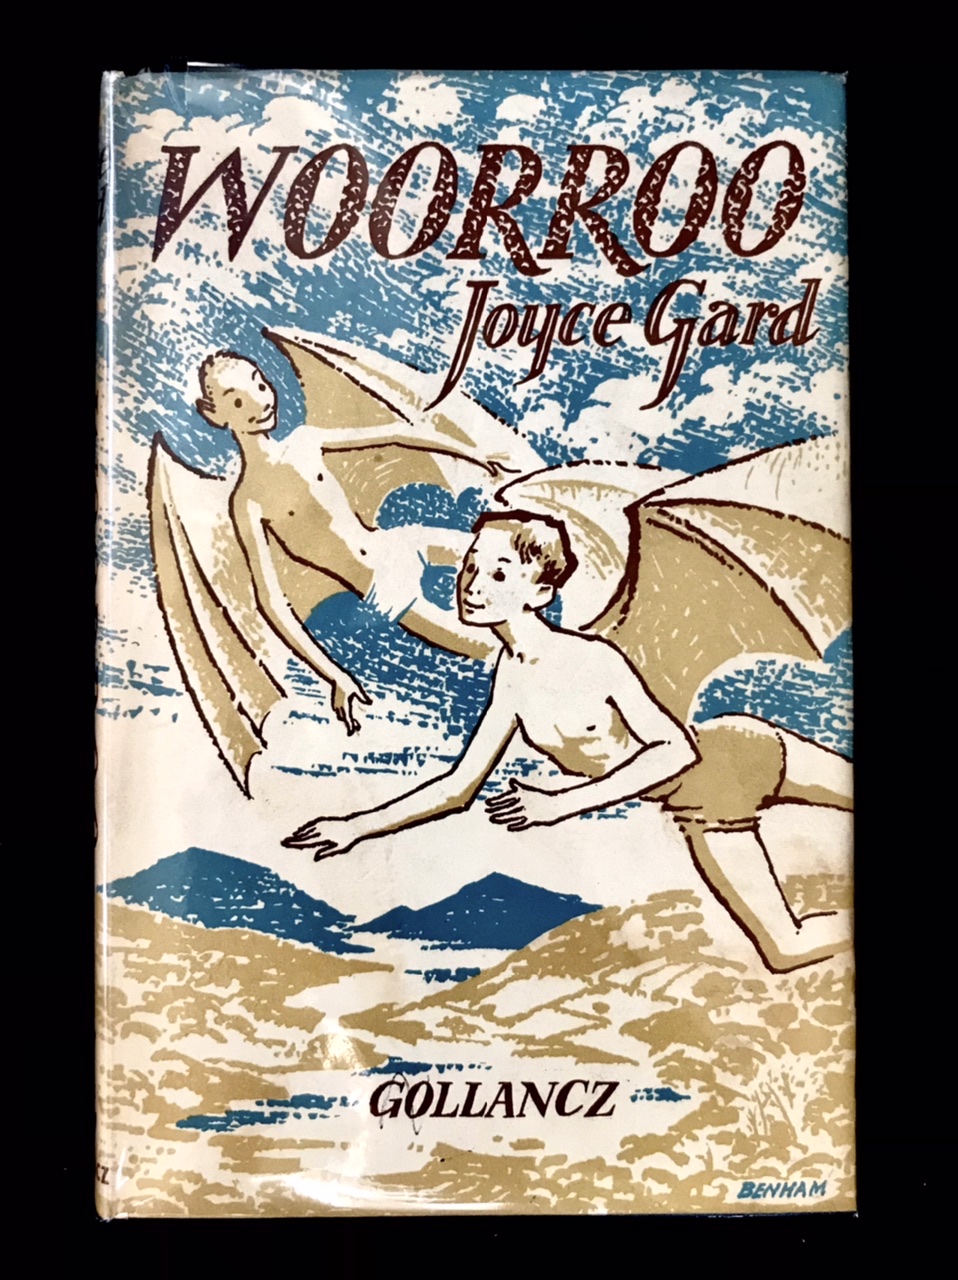 Woorroo by Joyce Gard